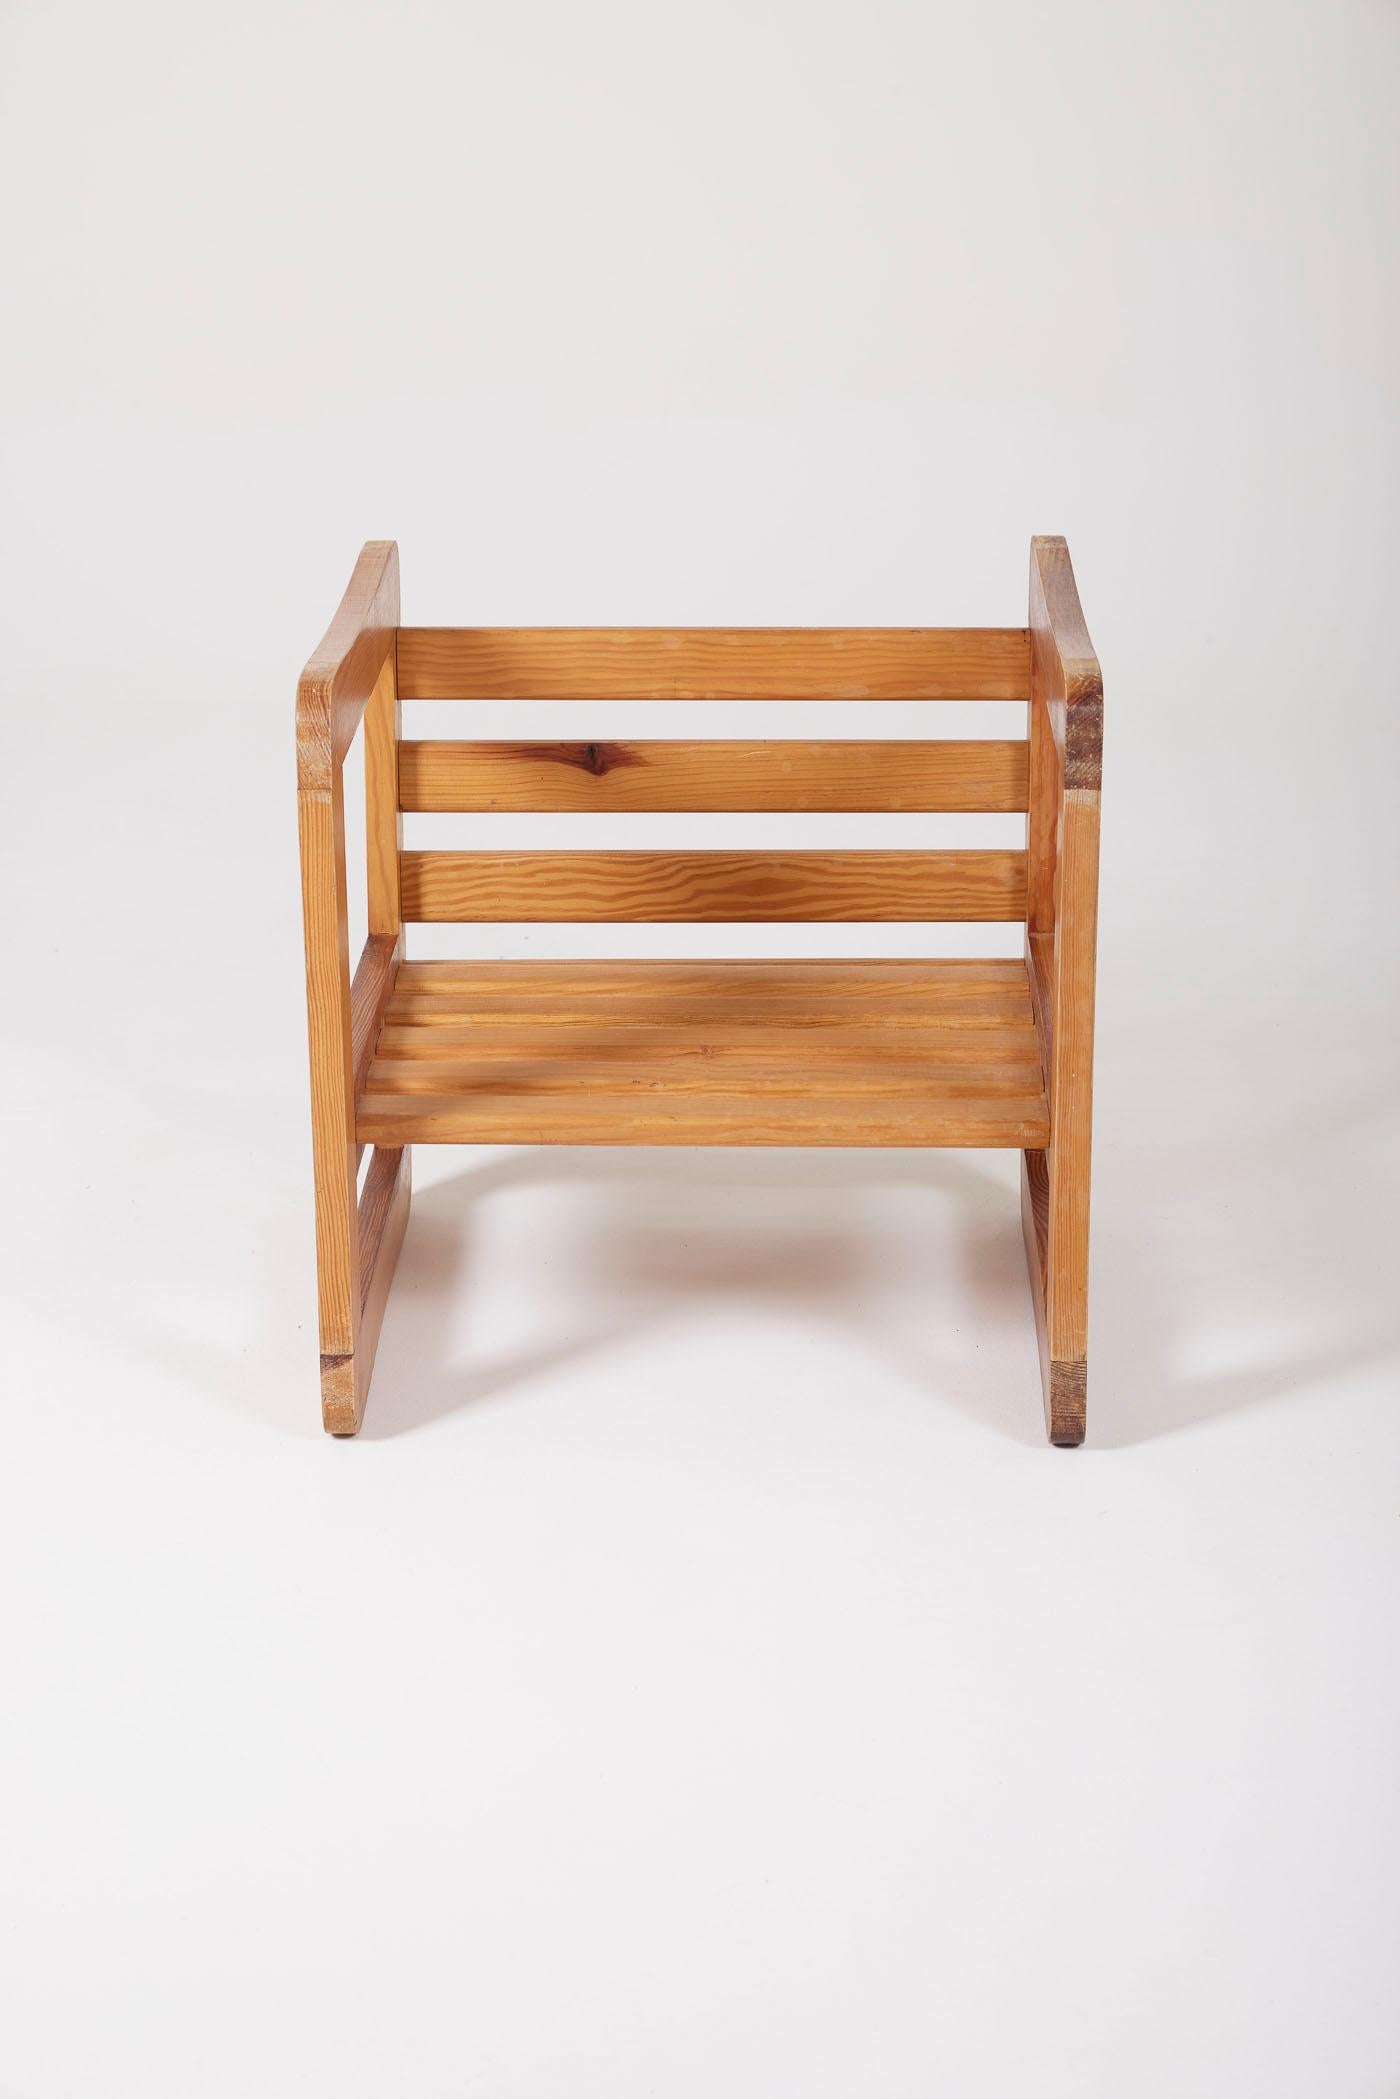 Oak Wooden stool by Marcel Gascoin For Sale